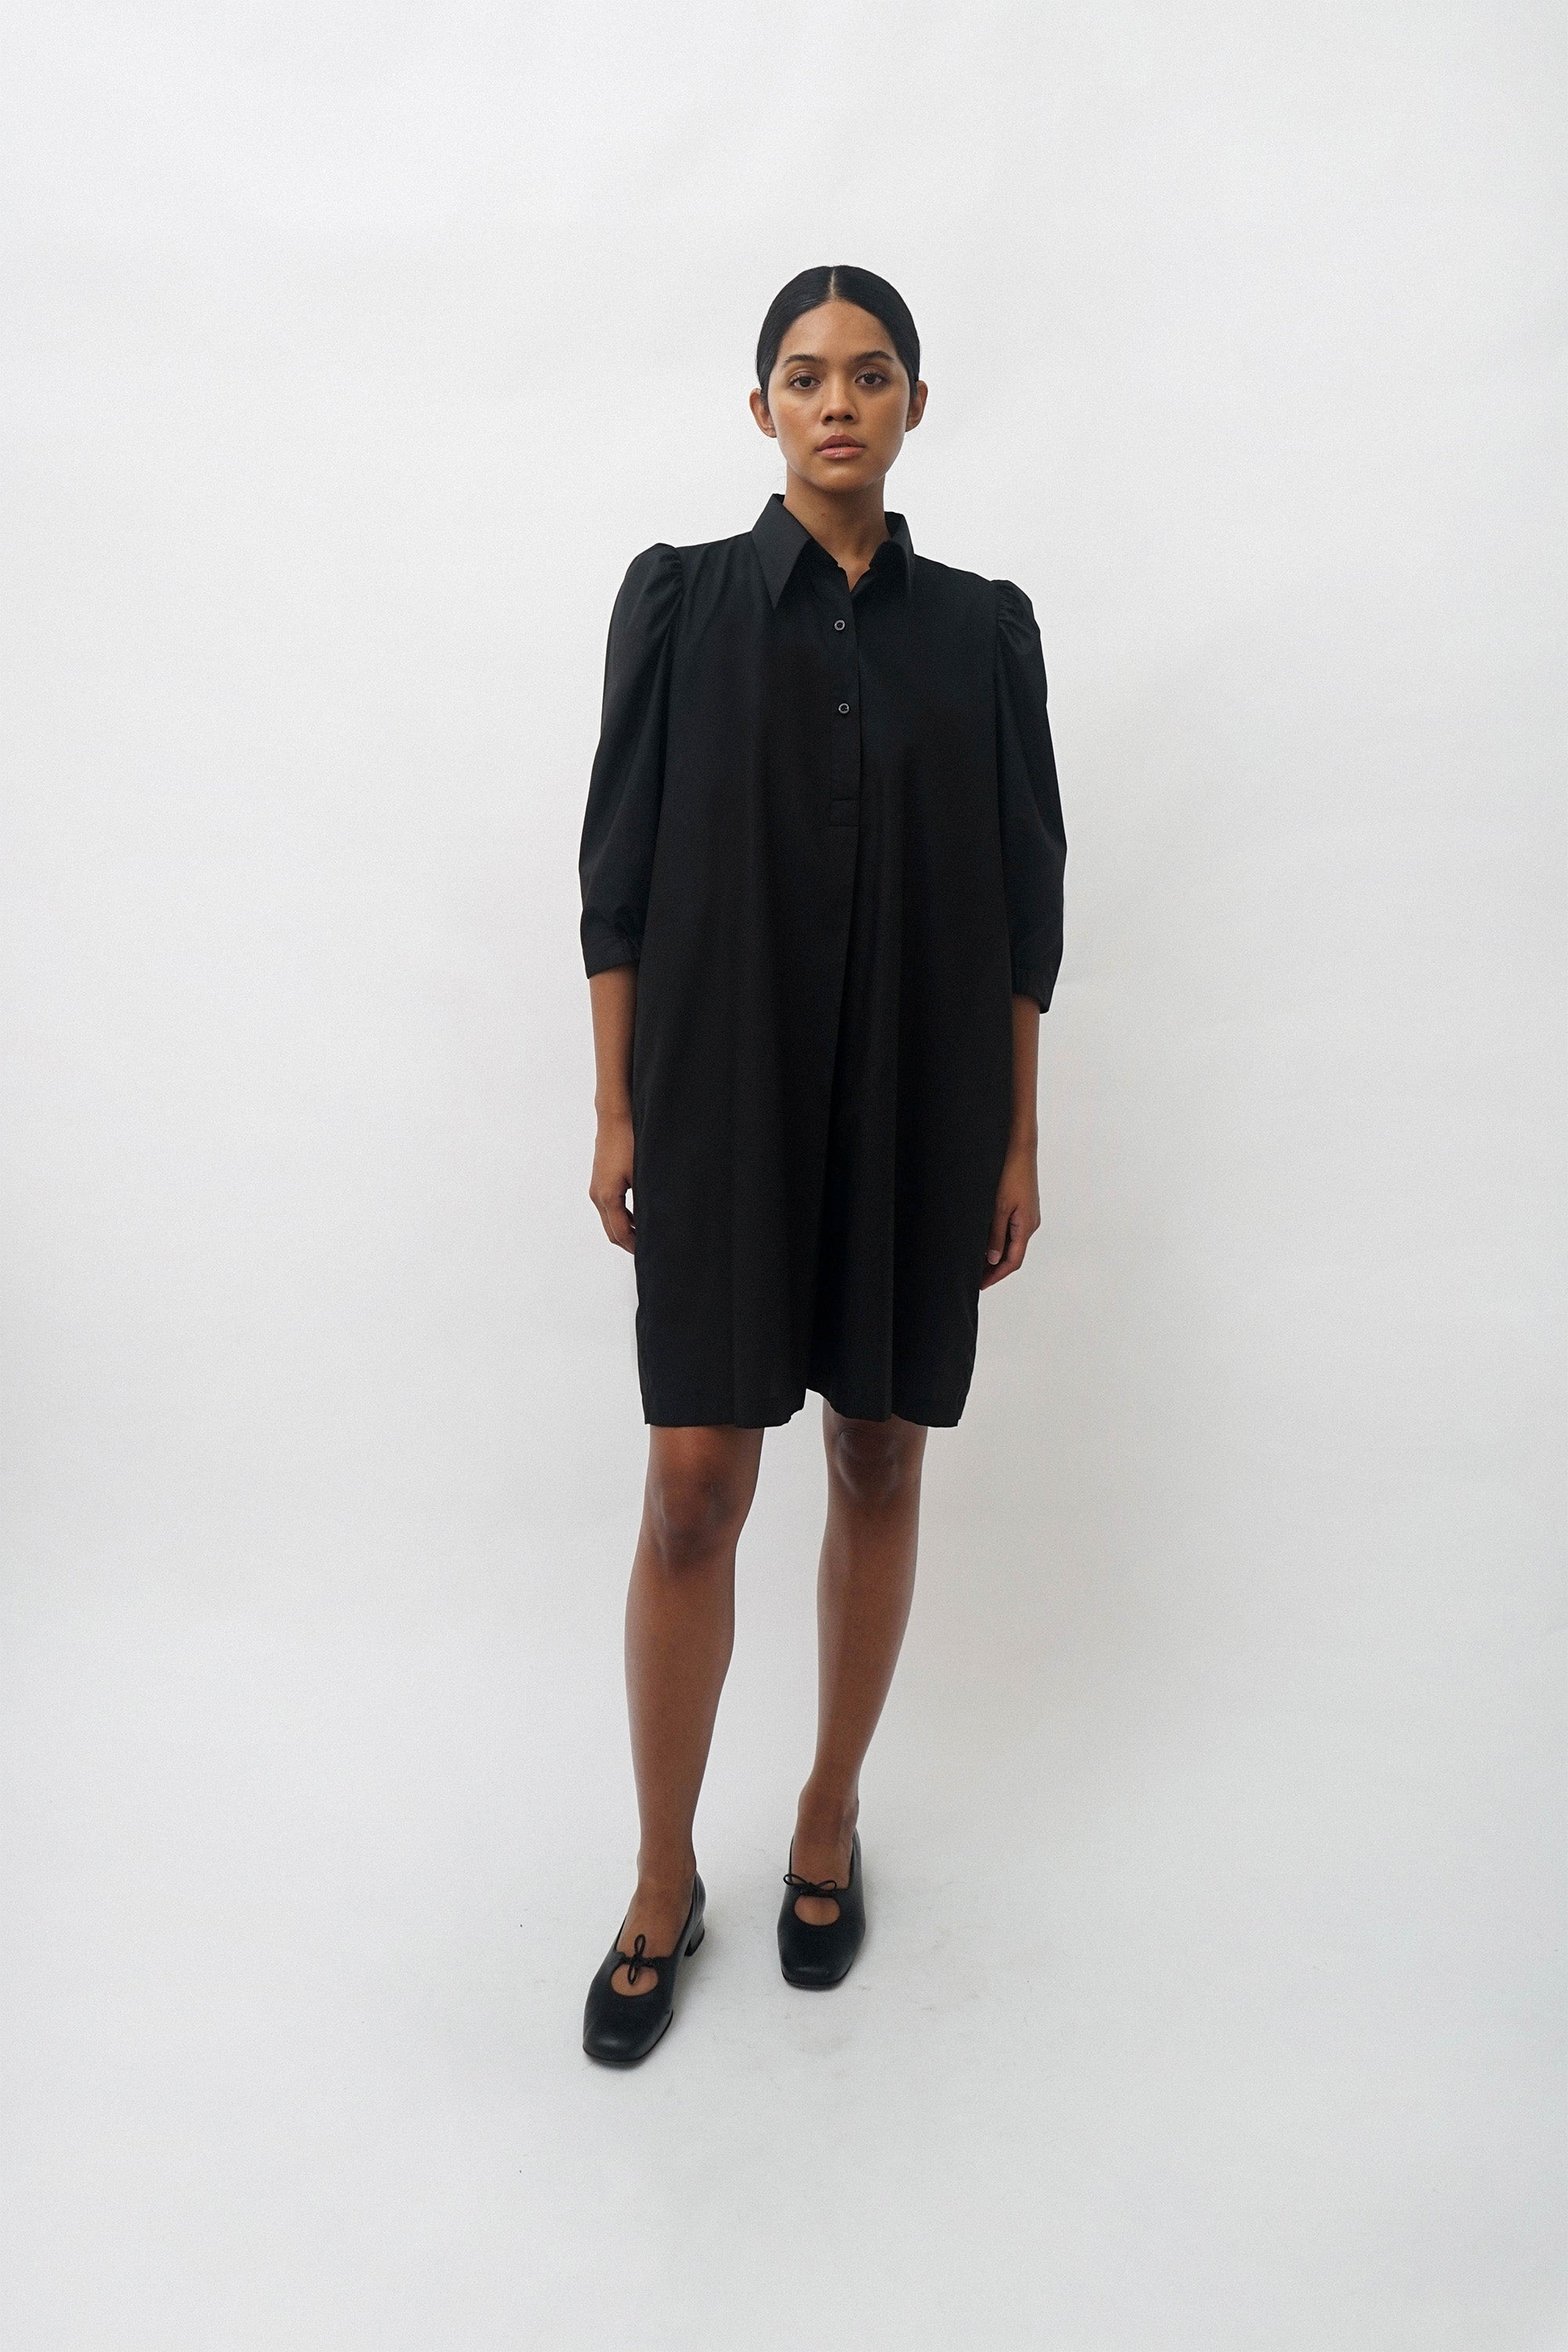 MIWA Dress - Black